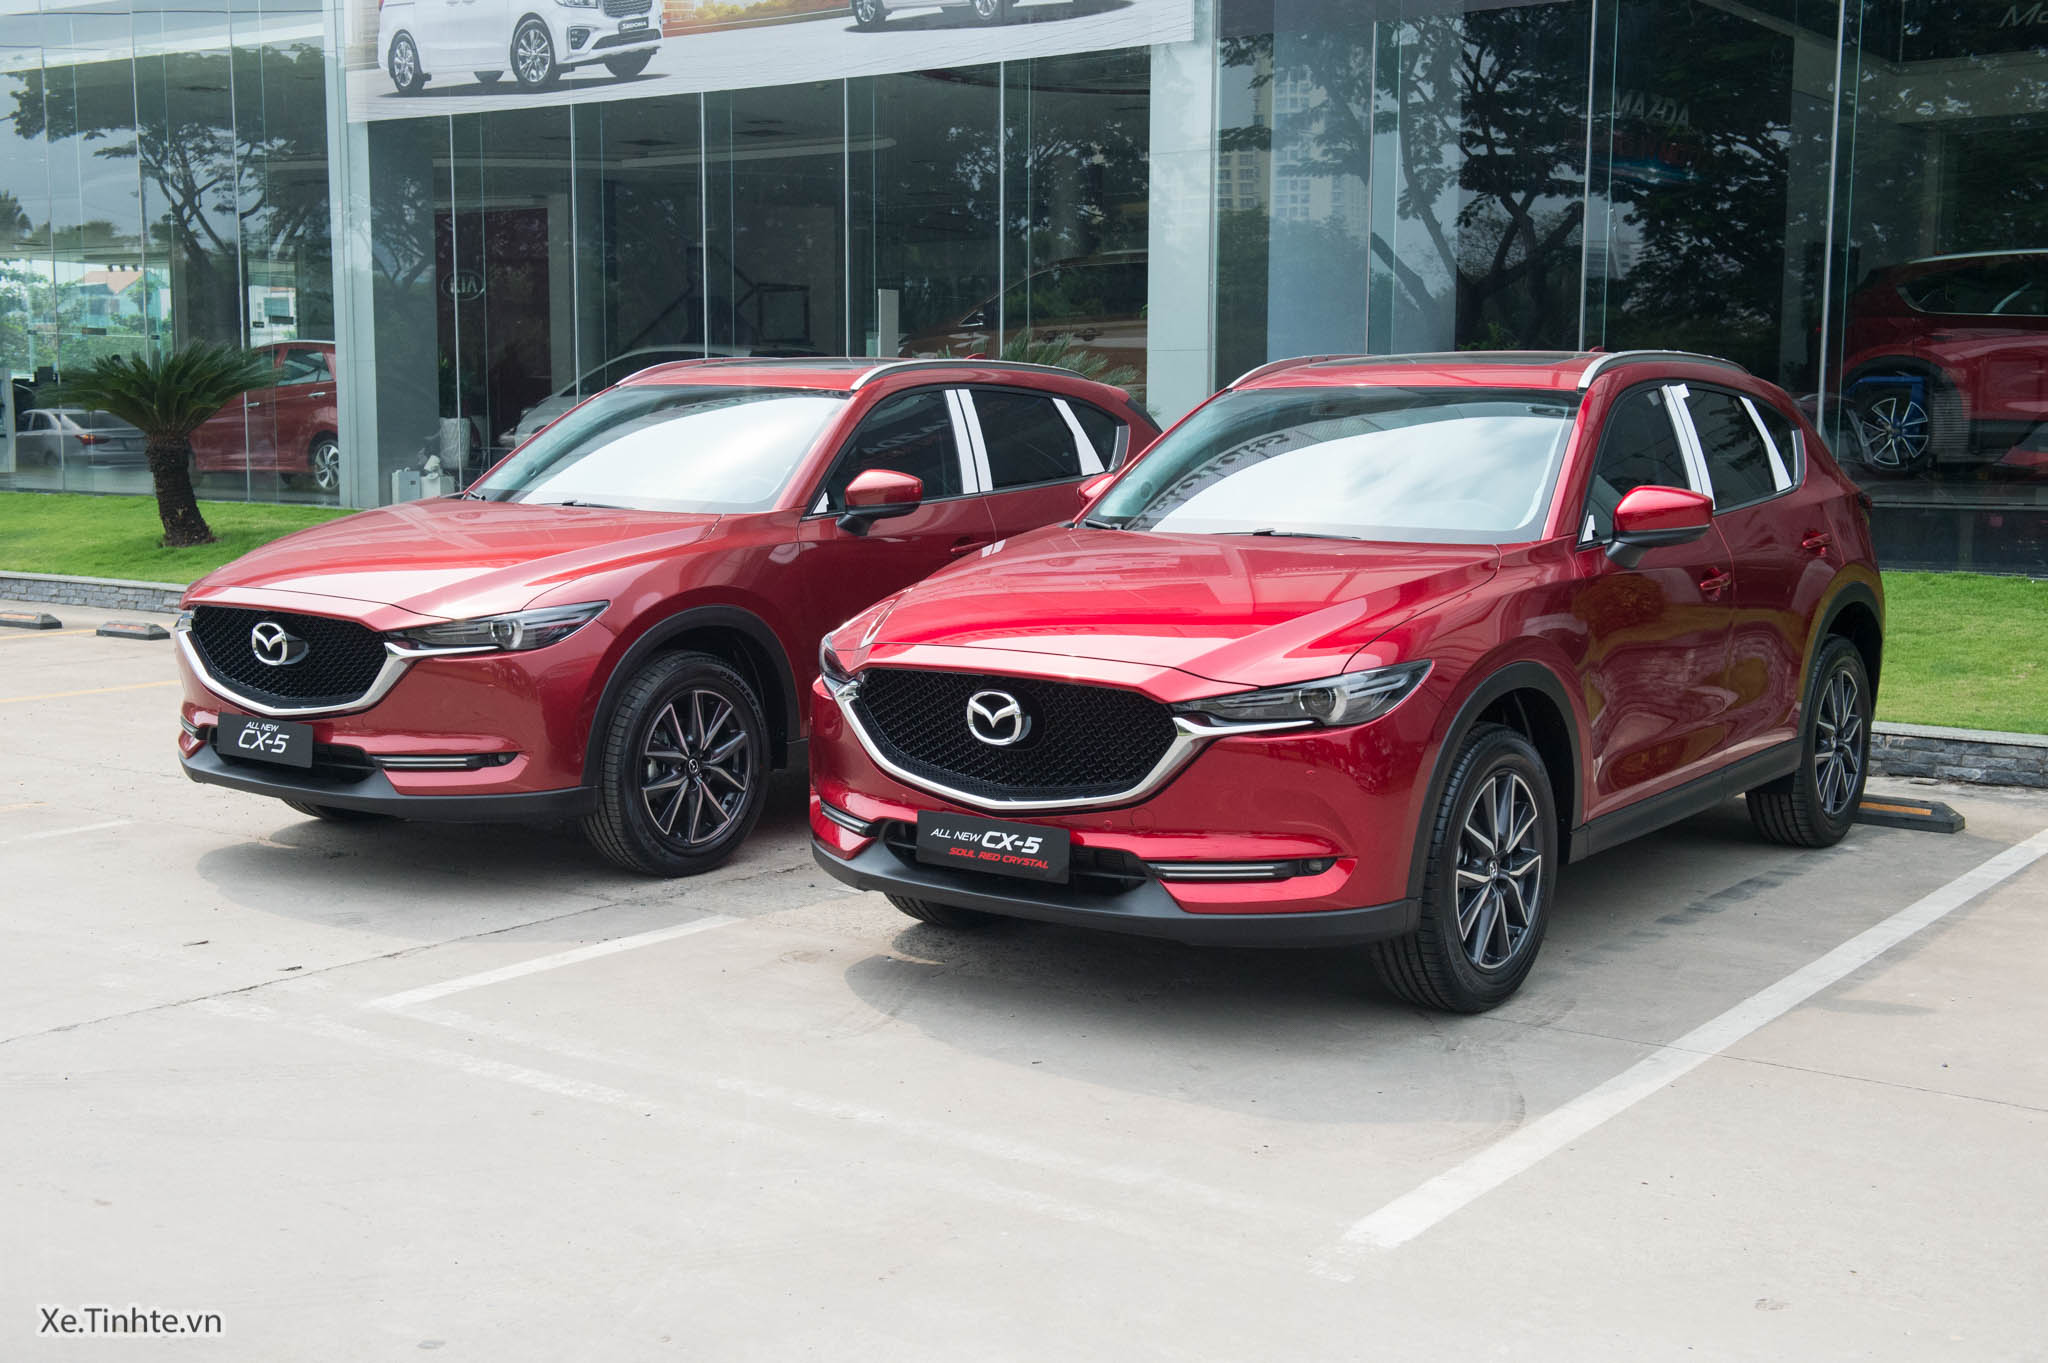 Tìm chủ sở hữu ôtô Mazda đỏ  Báo Công an Nhân dân điện tử